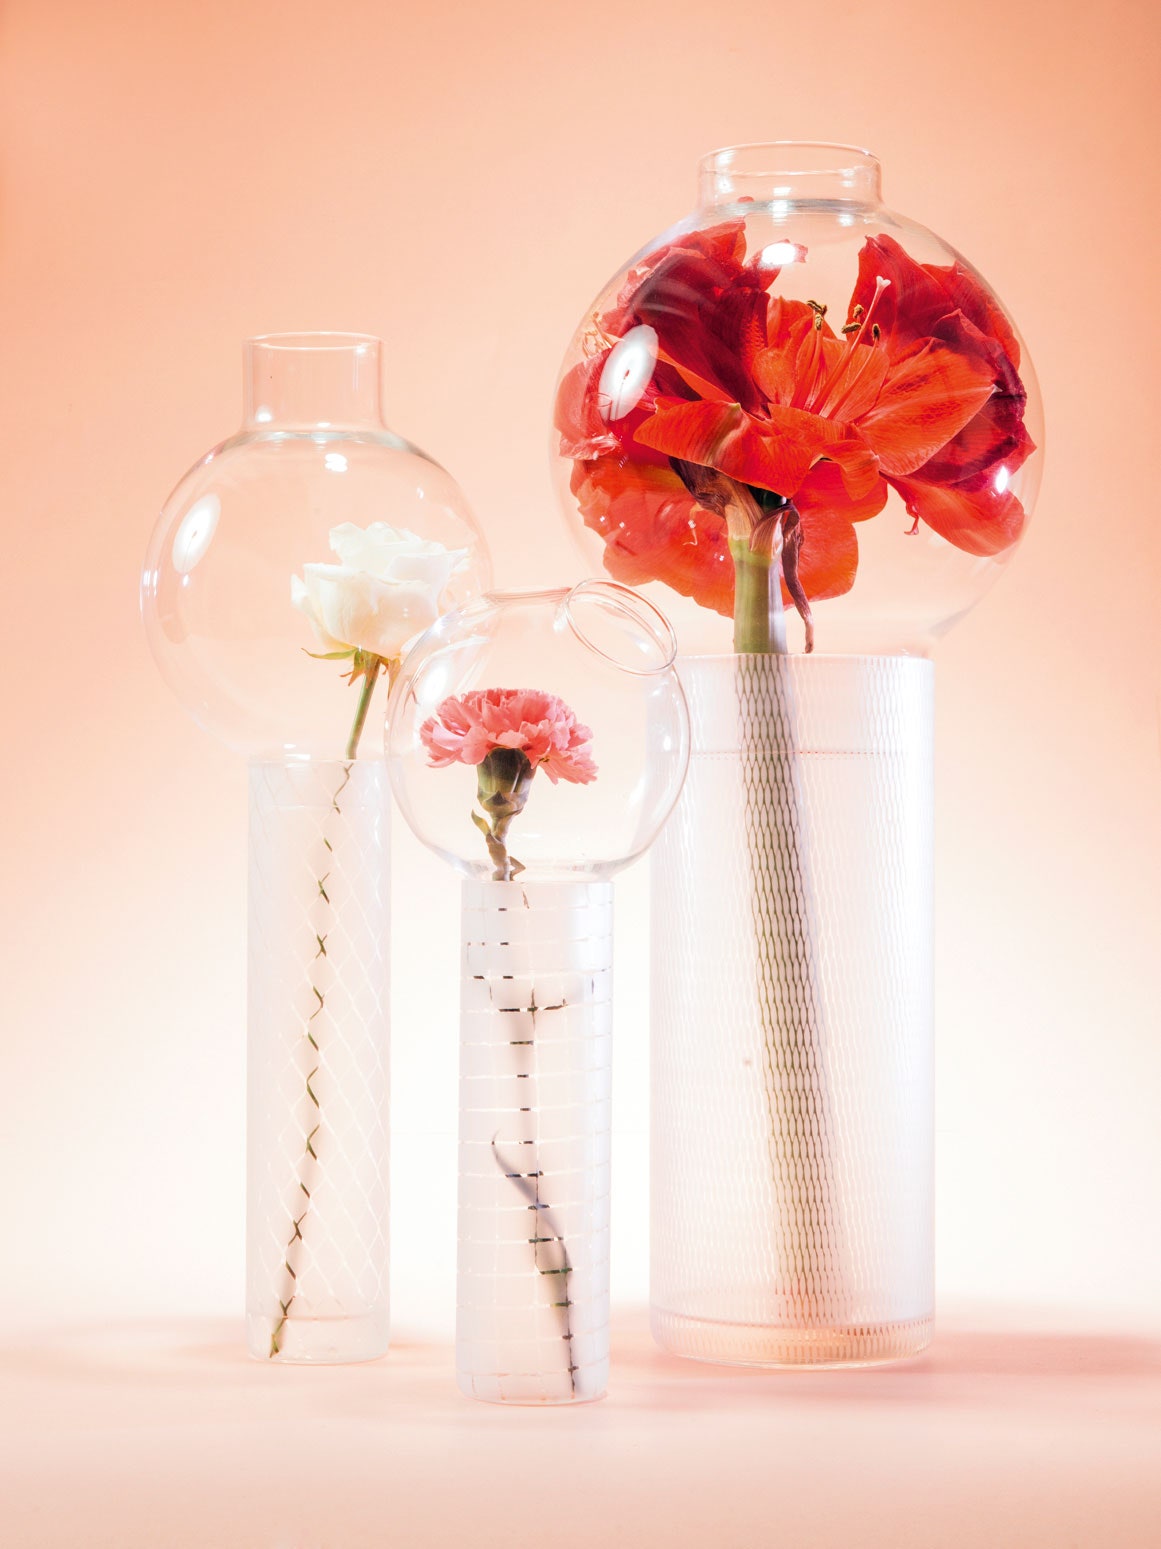 В необычные стеклянные вазы Olfattorio дизайнерской студии Челестино Attico Design цветы погружаются “с головой”.